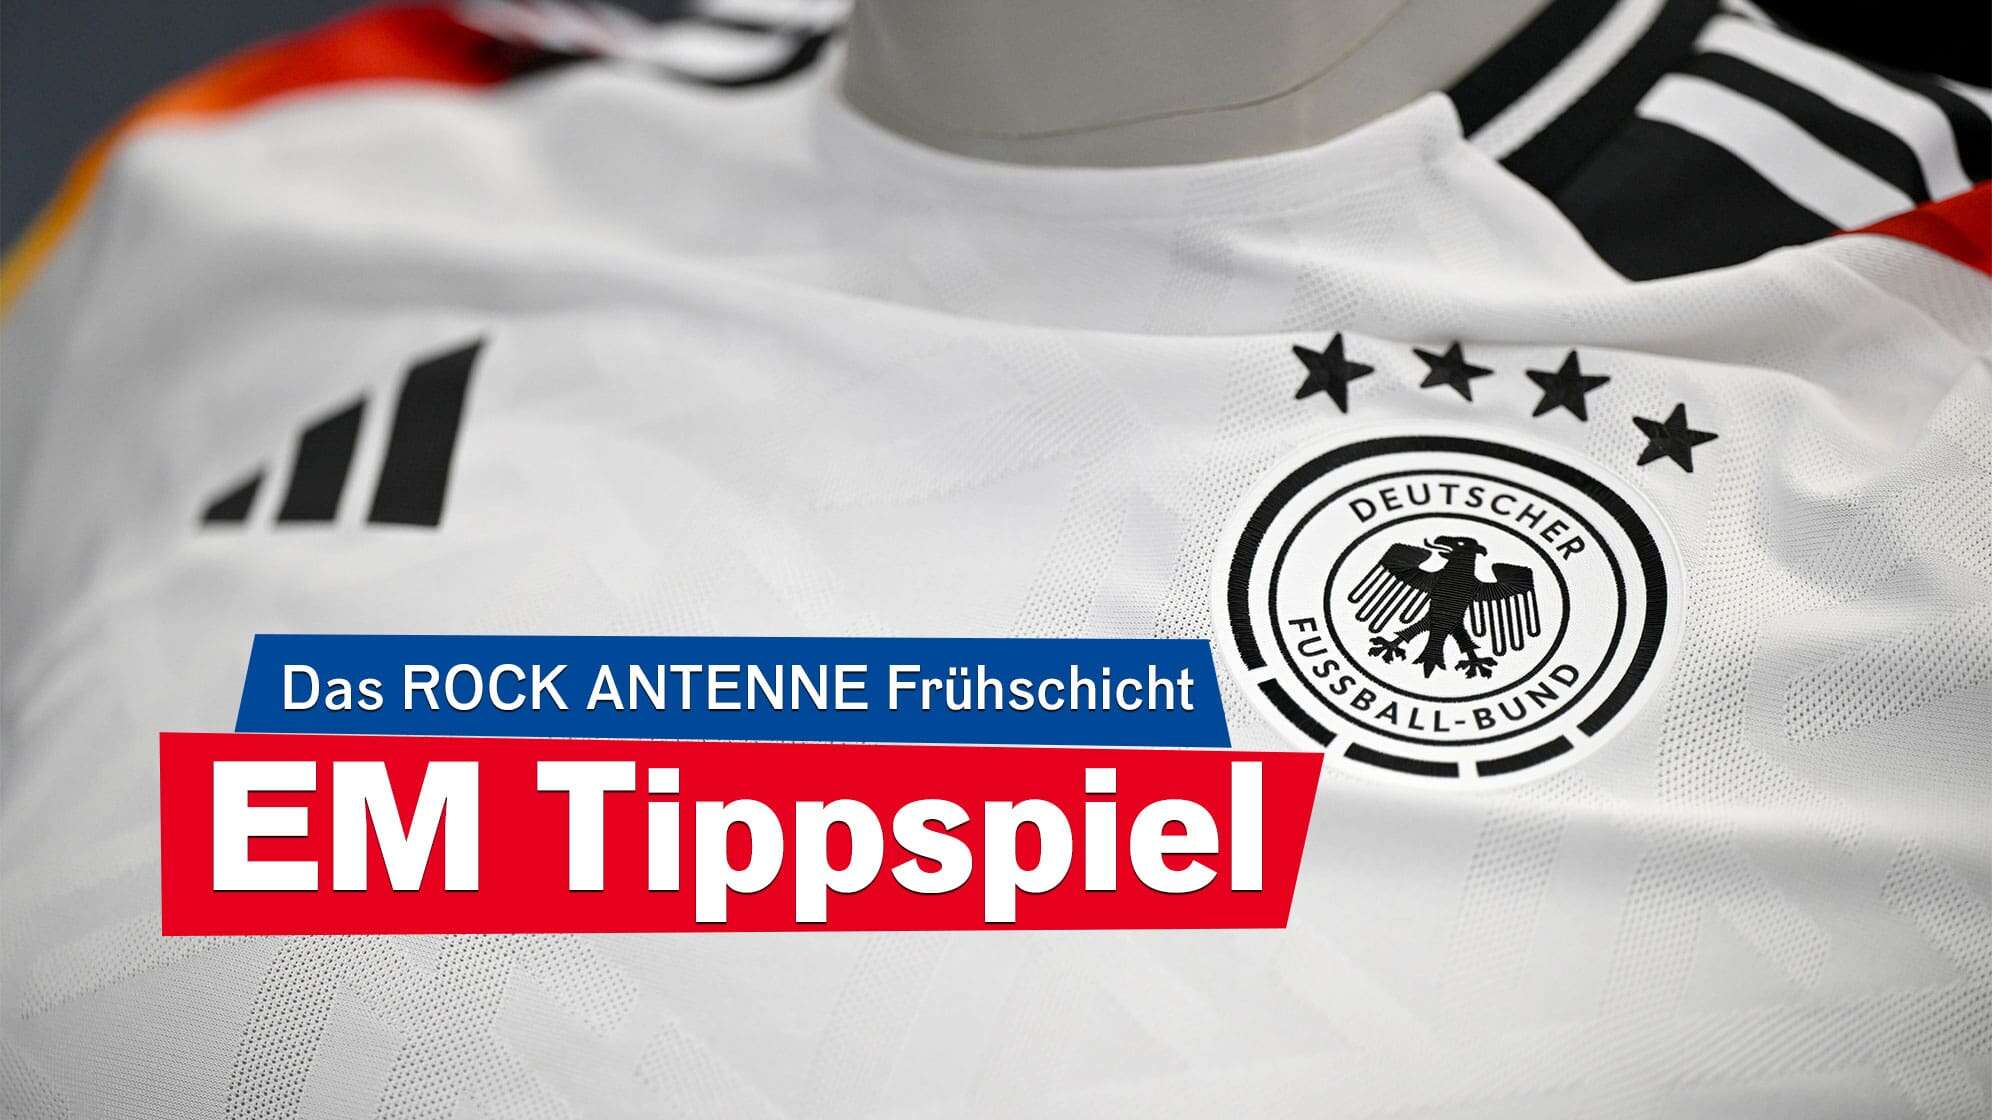 Nahaufnahme des offiziellen Trikots der deutschen Fußball-Nationalmannschaft im Brustbereich, dazu der Text: Das ROCK ANTENNE Frühschicht EM Tippspiel